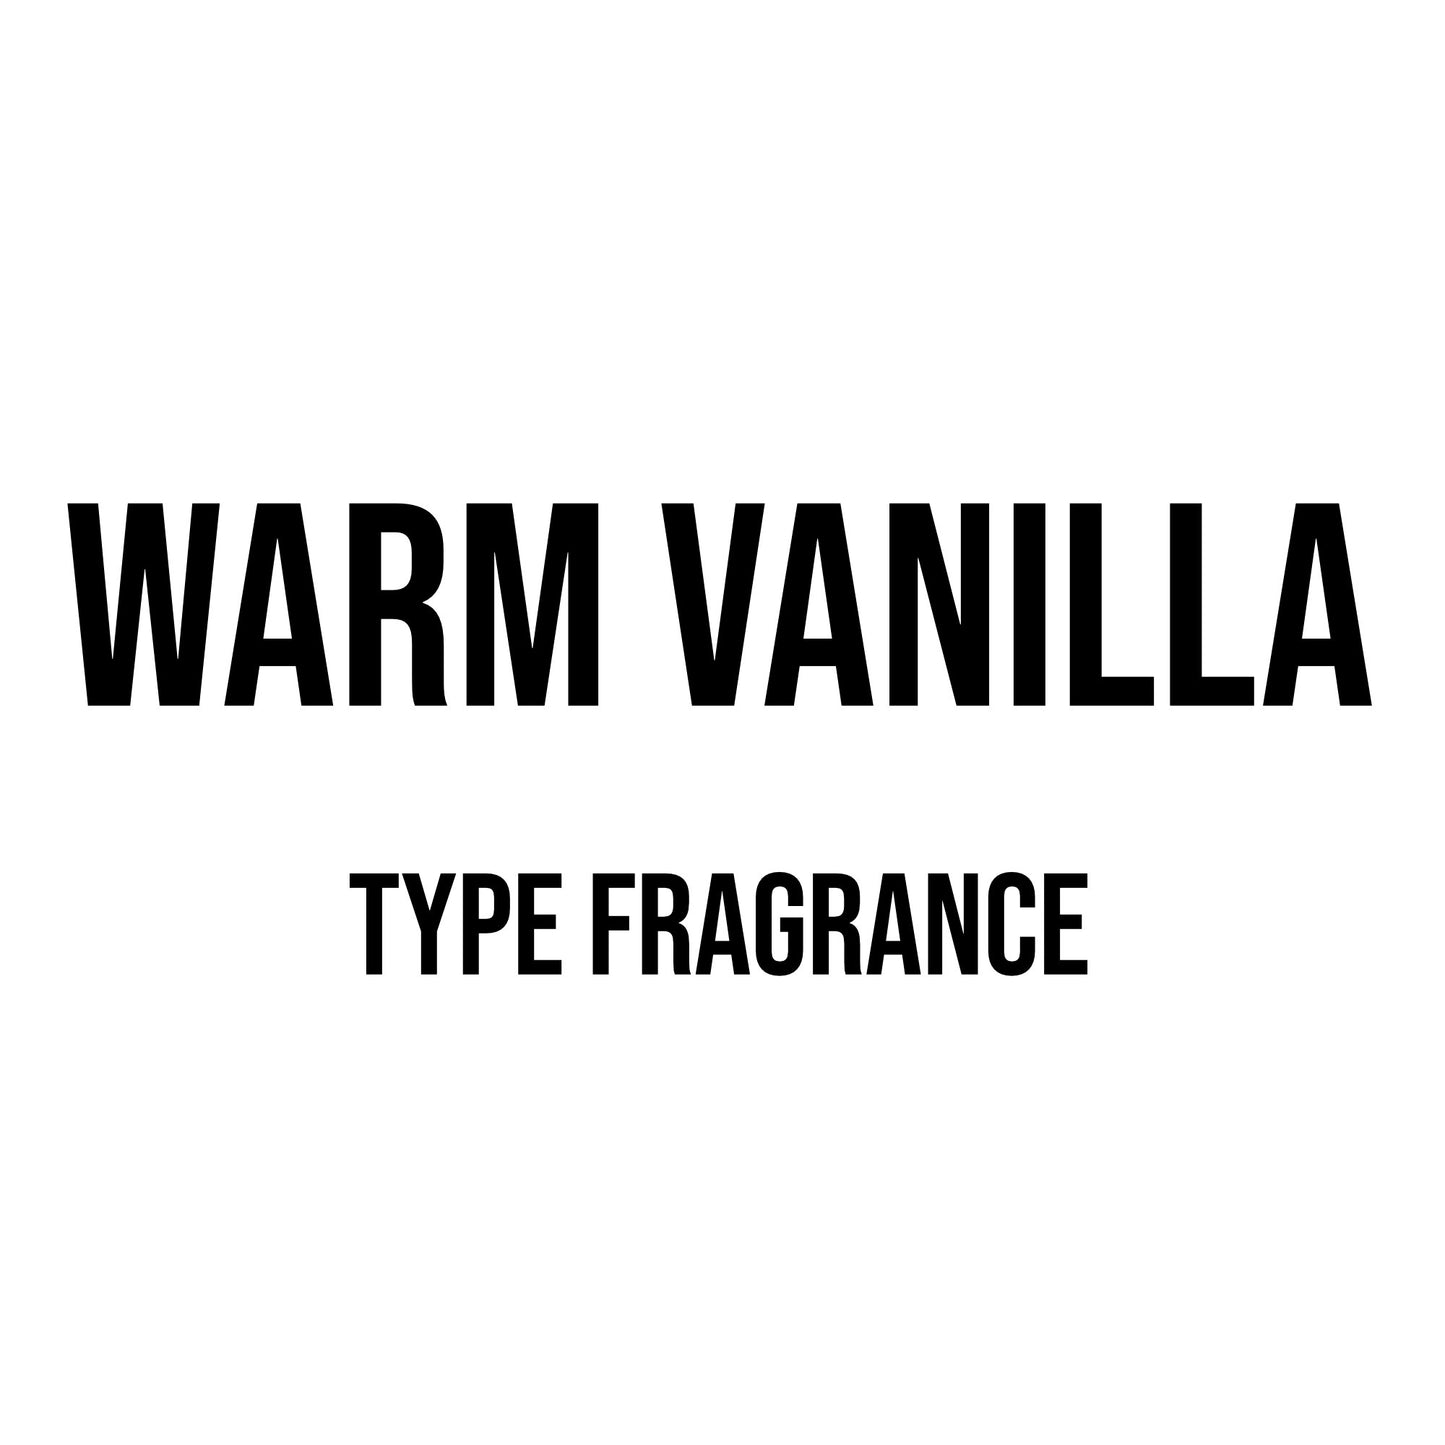 Warm Vanilla Type Fragrance